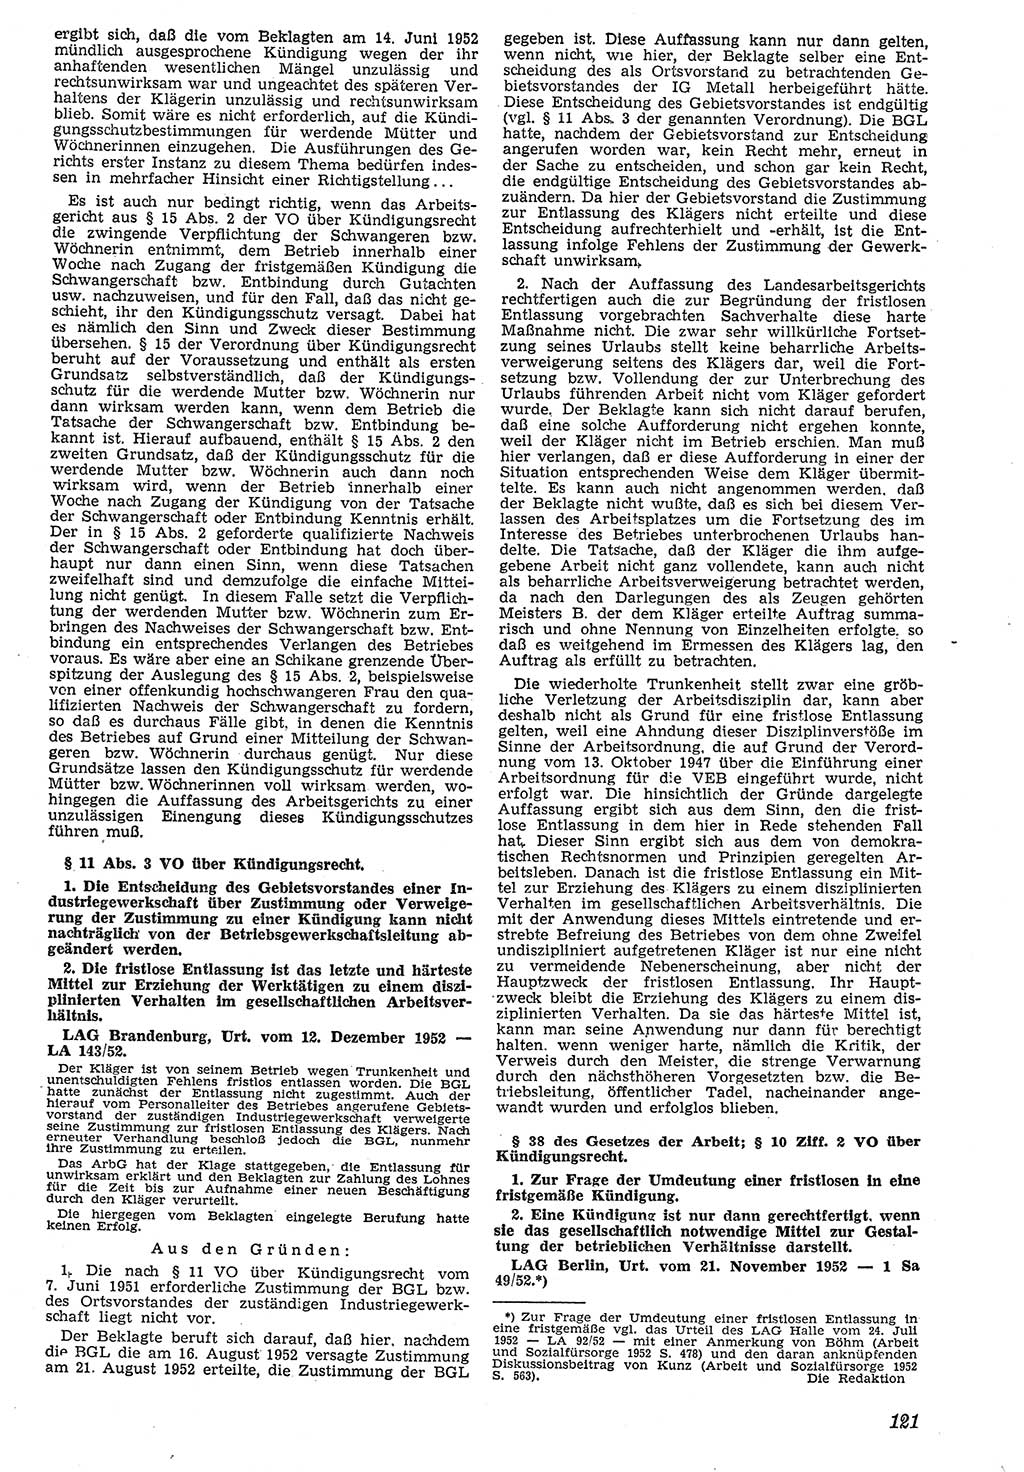 Neue Justiz (NJ), Zeitschrift für Recht und Rechtswissenschaft [Deutsche Demokratische Republik (DDR)], 7. Jahrgang 1953, Seite 121 (NJ DDR 1953, S. 121)